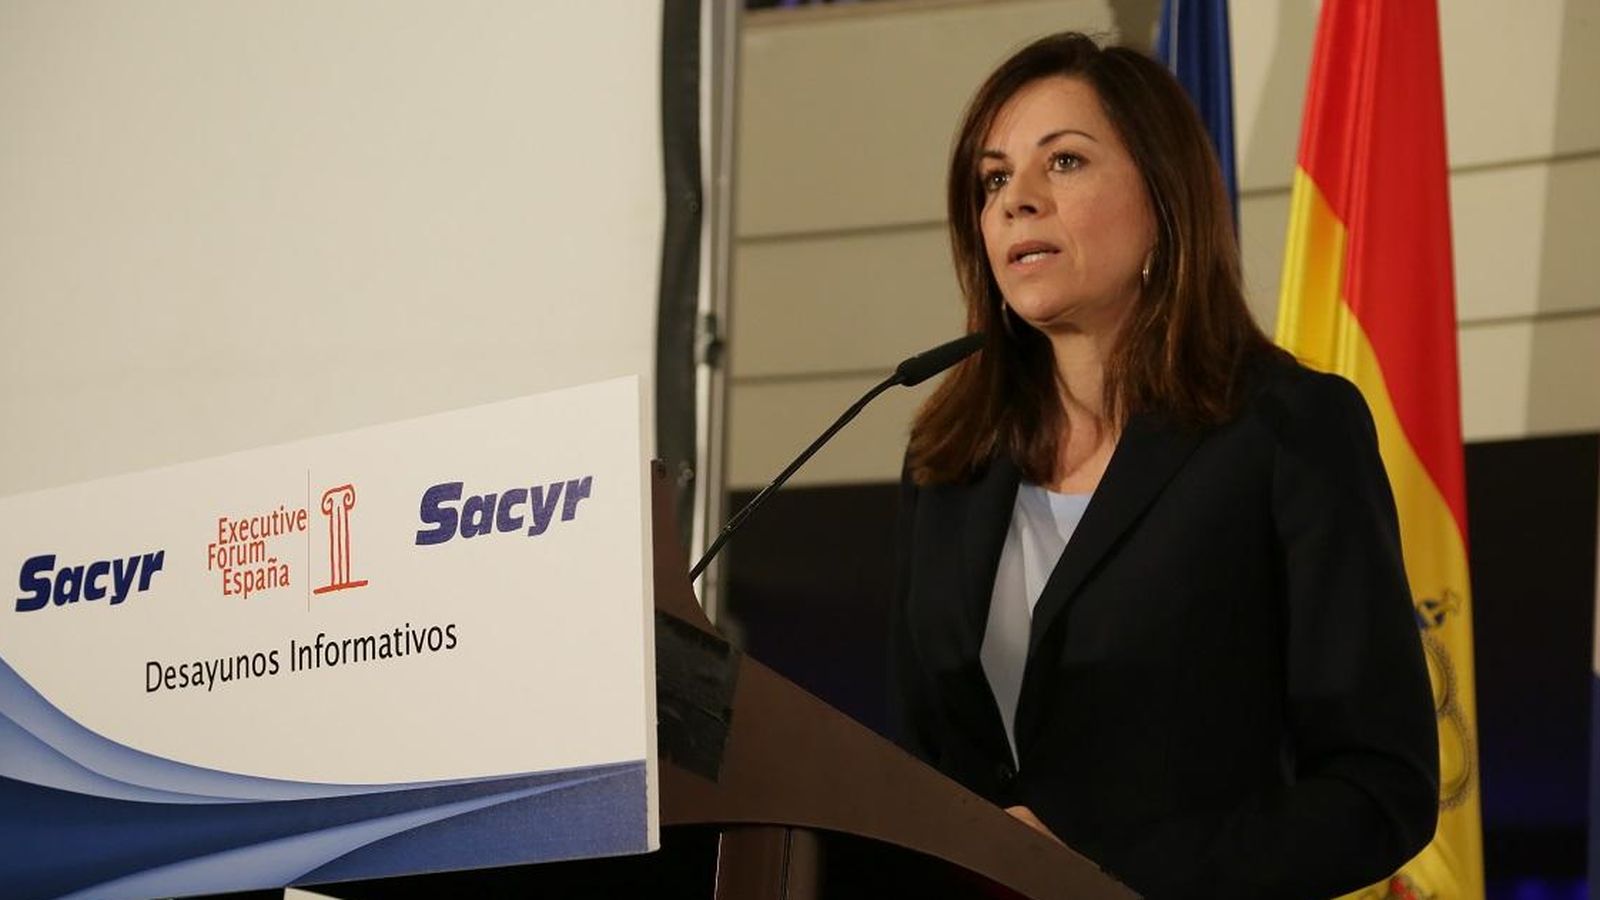 Foto: La embajadora de Panamá en España, María Mercedes de la Guardia Corró. Foto: Executive Forum